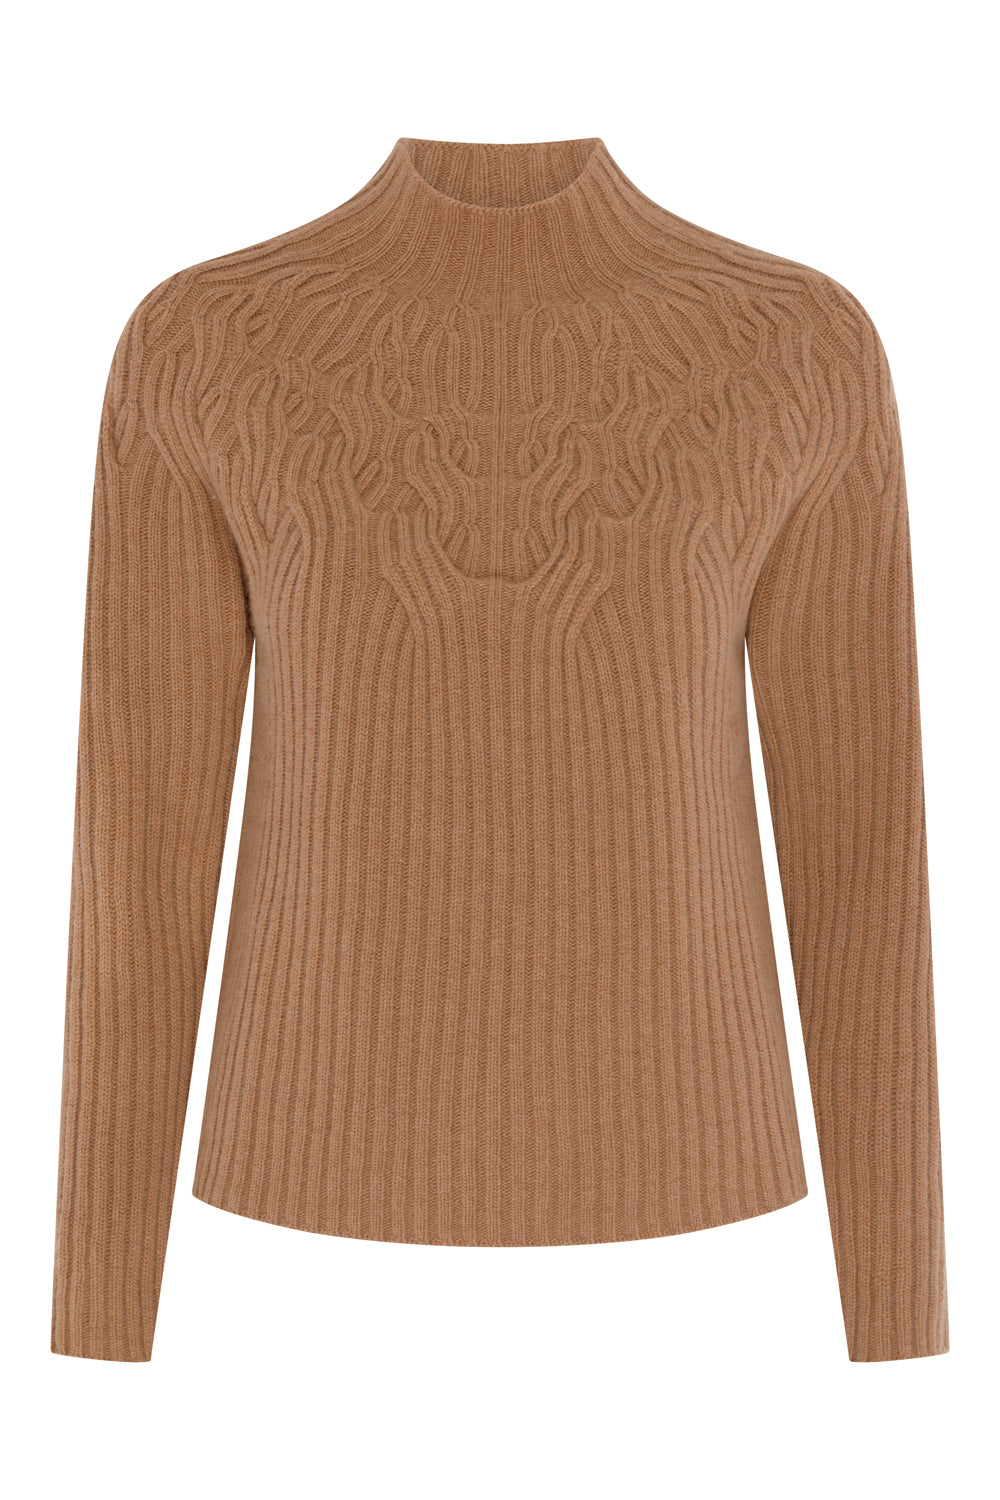 Modal cashmere high neck top, melange brown, Pompea